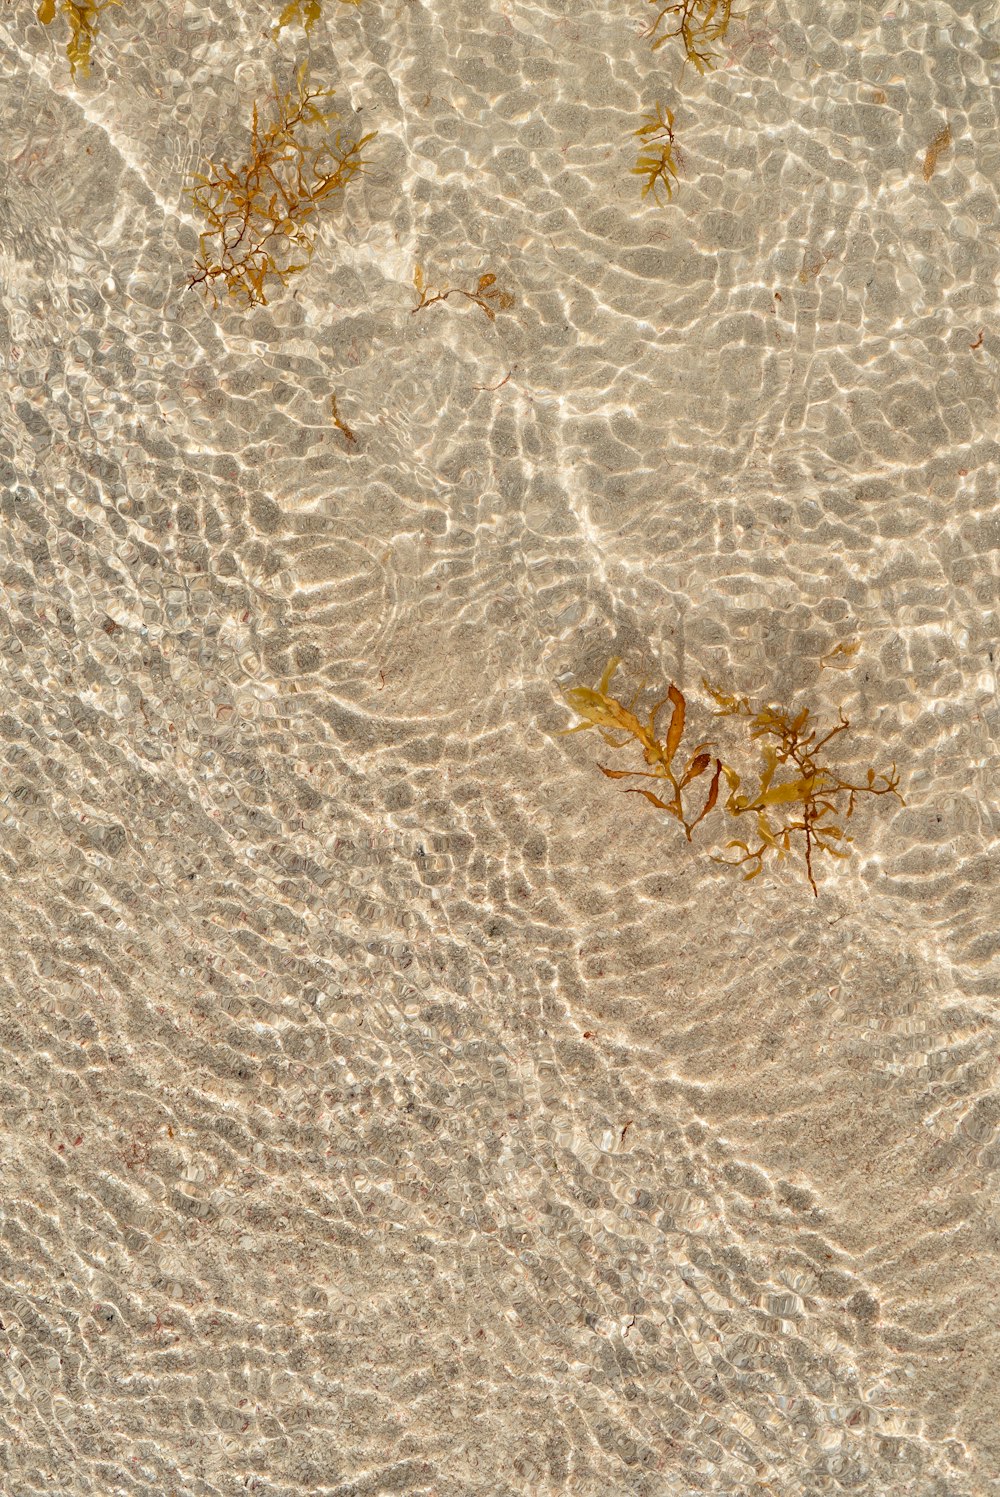 Eine Gruppe von Algen, die auf einem Sandstrand schwimmen